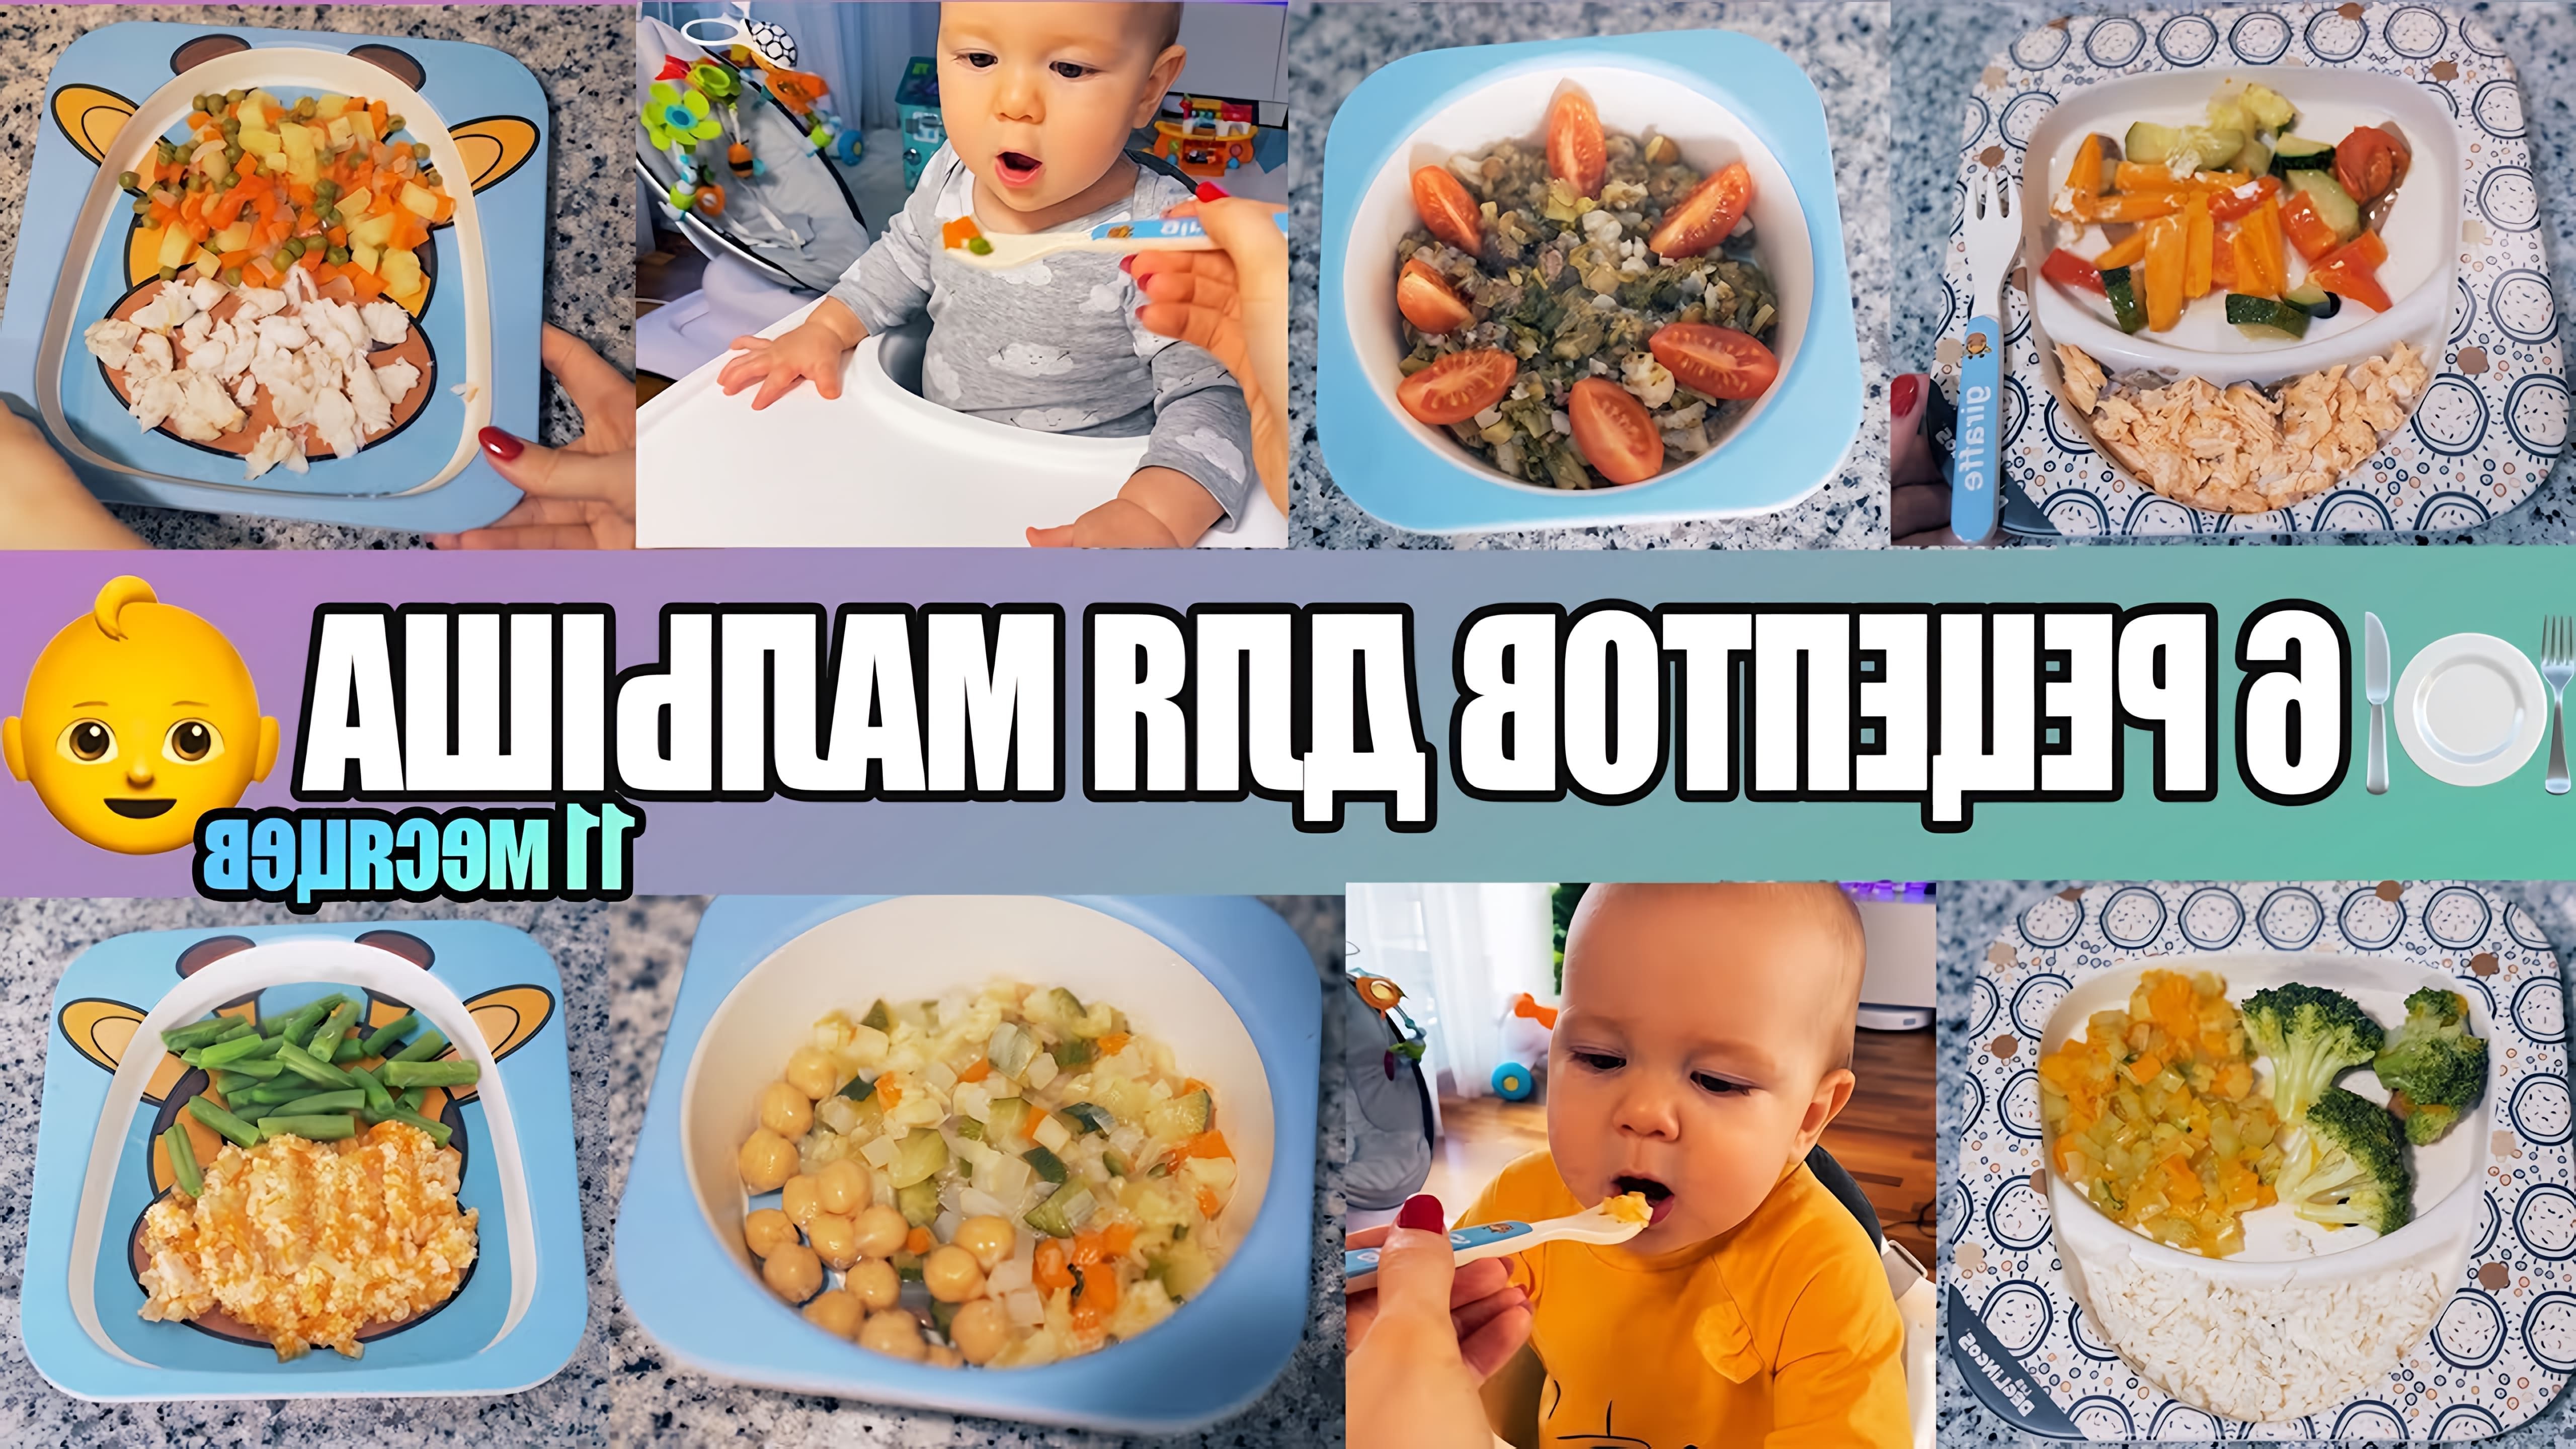 В этом видео мама делится рецептами блюд для своего 11-месячного малыша